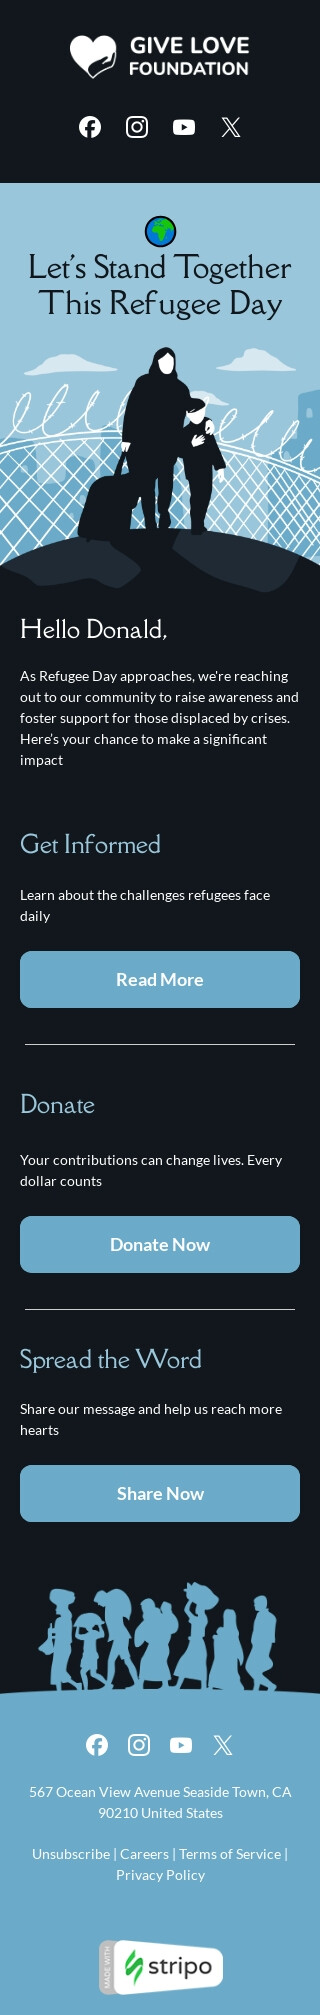 Plantilla de correo electrónico «Vamos a estar juntos» de Día Mundial de los Refugiados para la industria de recaudación de fondos Vista de móvil